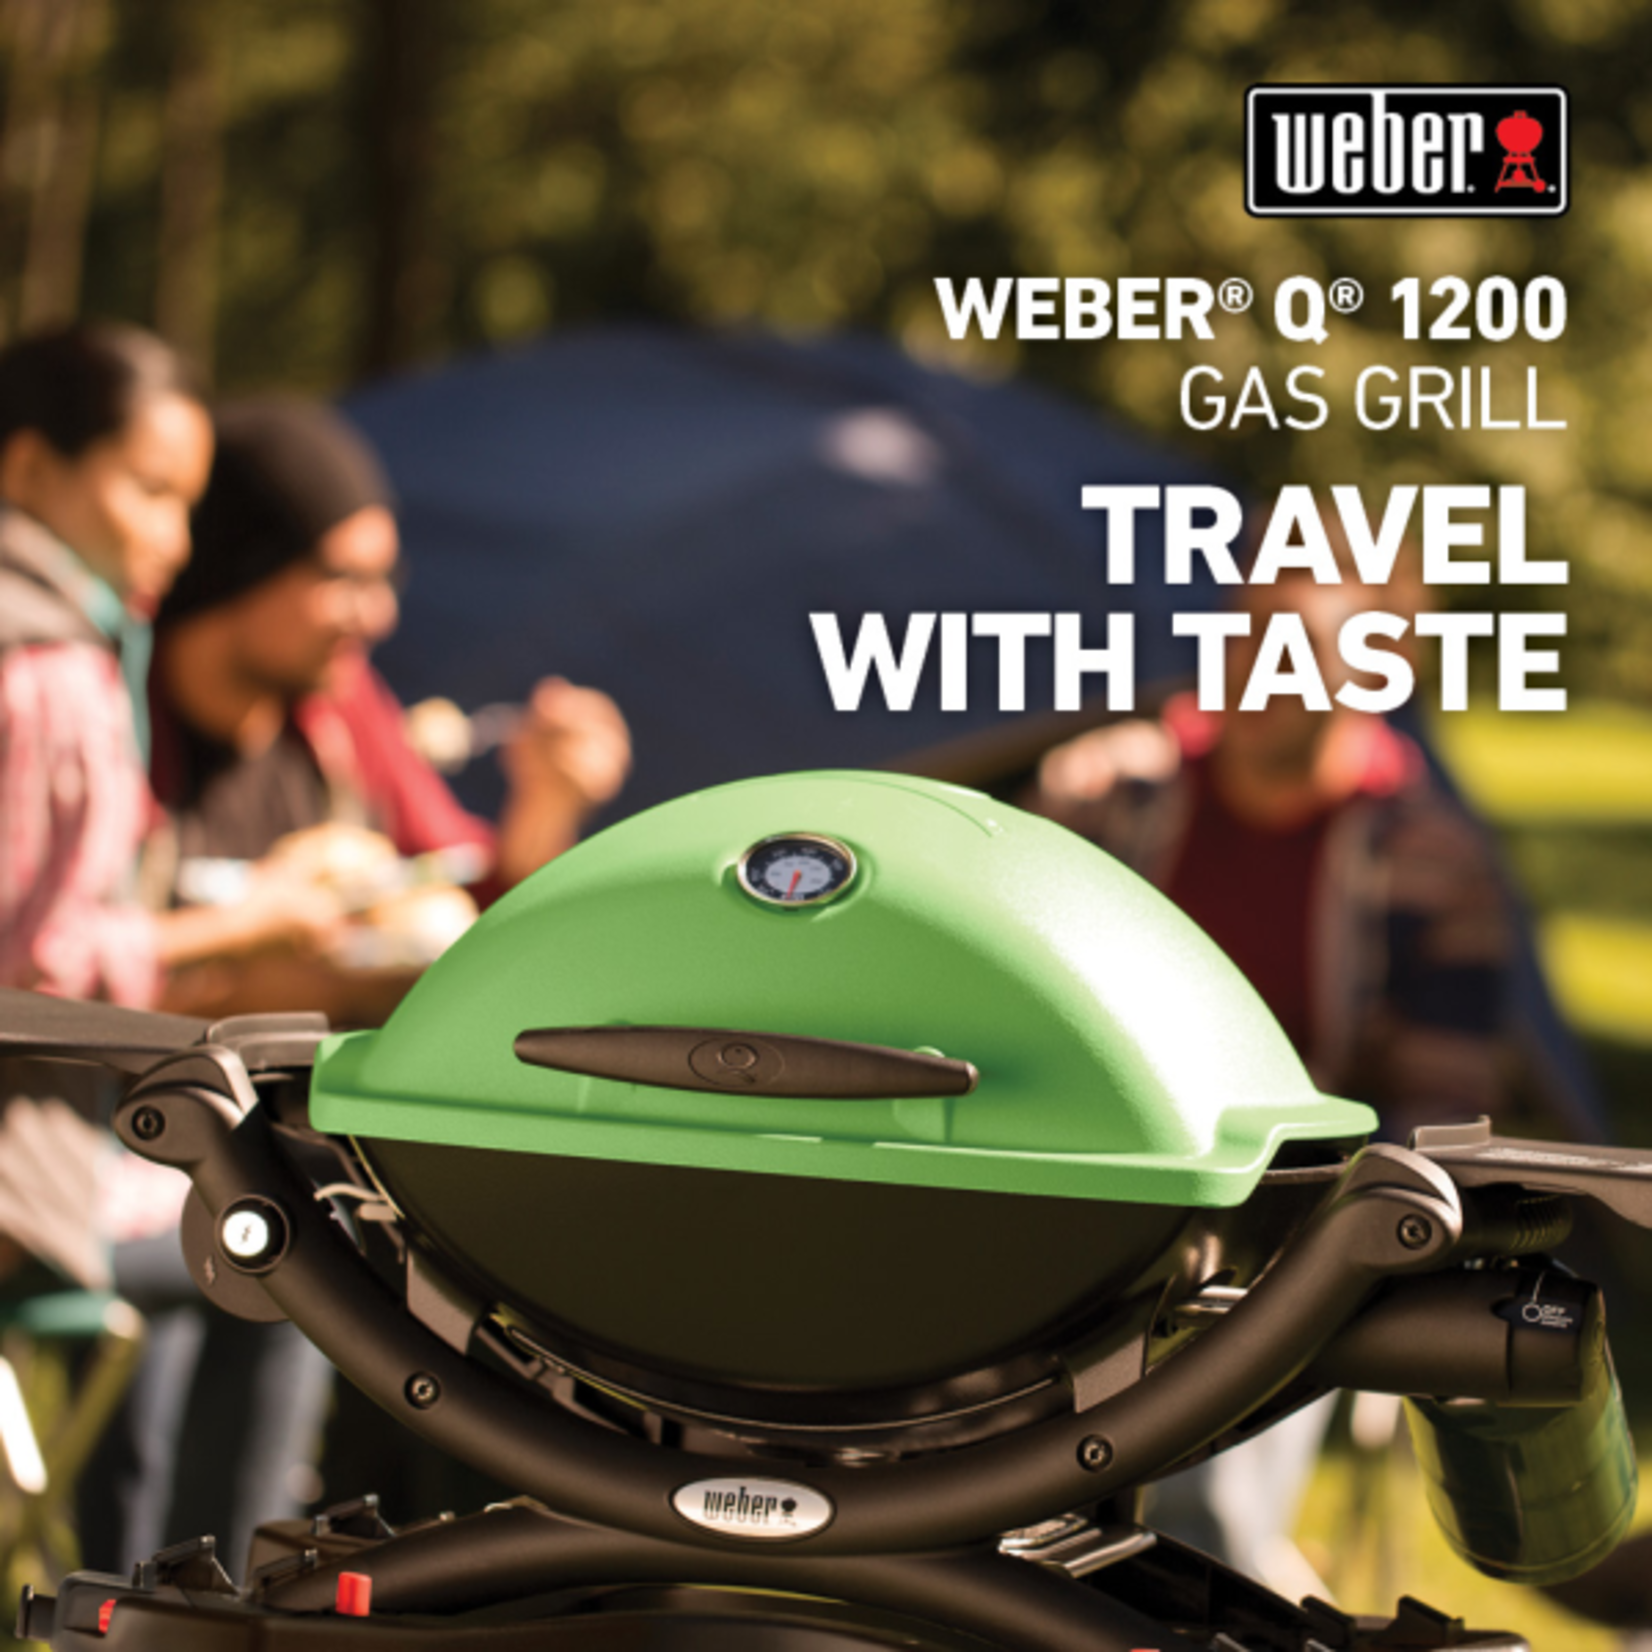 Weber Q 1200 Gas Grill LP Green